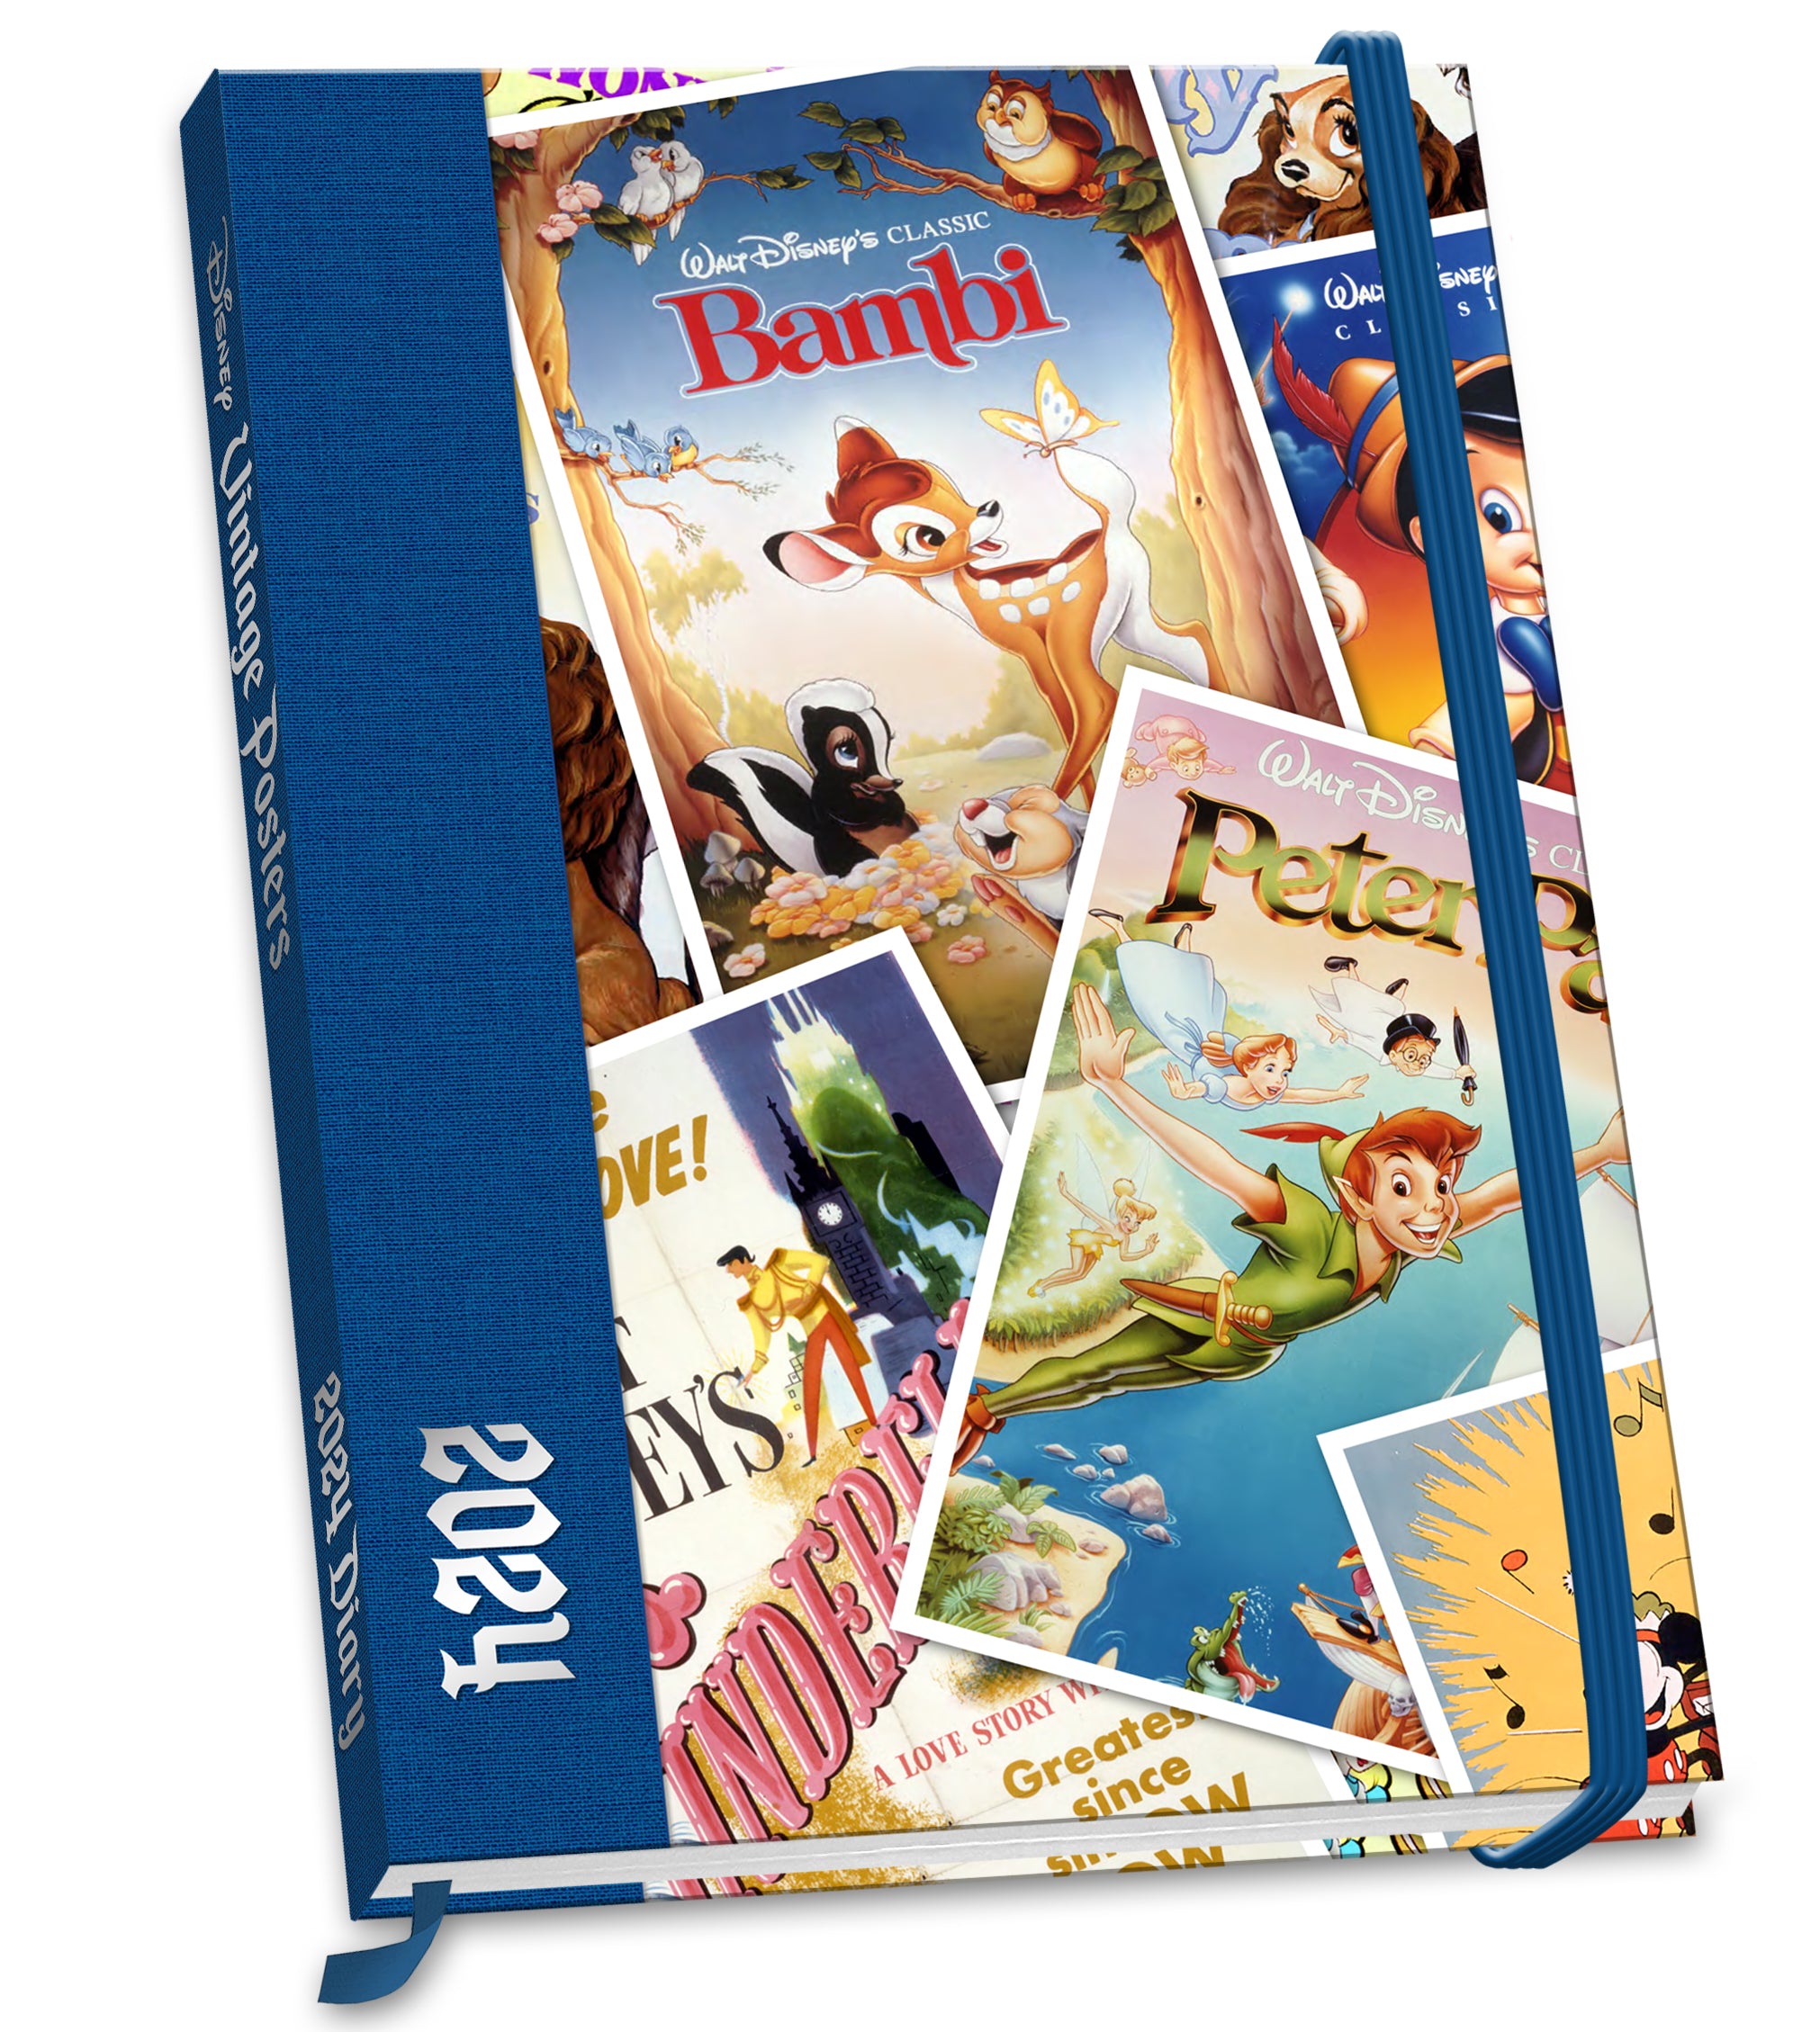 Acheter Disney Vintage Posters Agenda 2024 ? Commande rapidement et  facilement